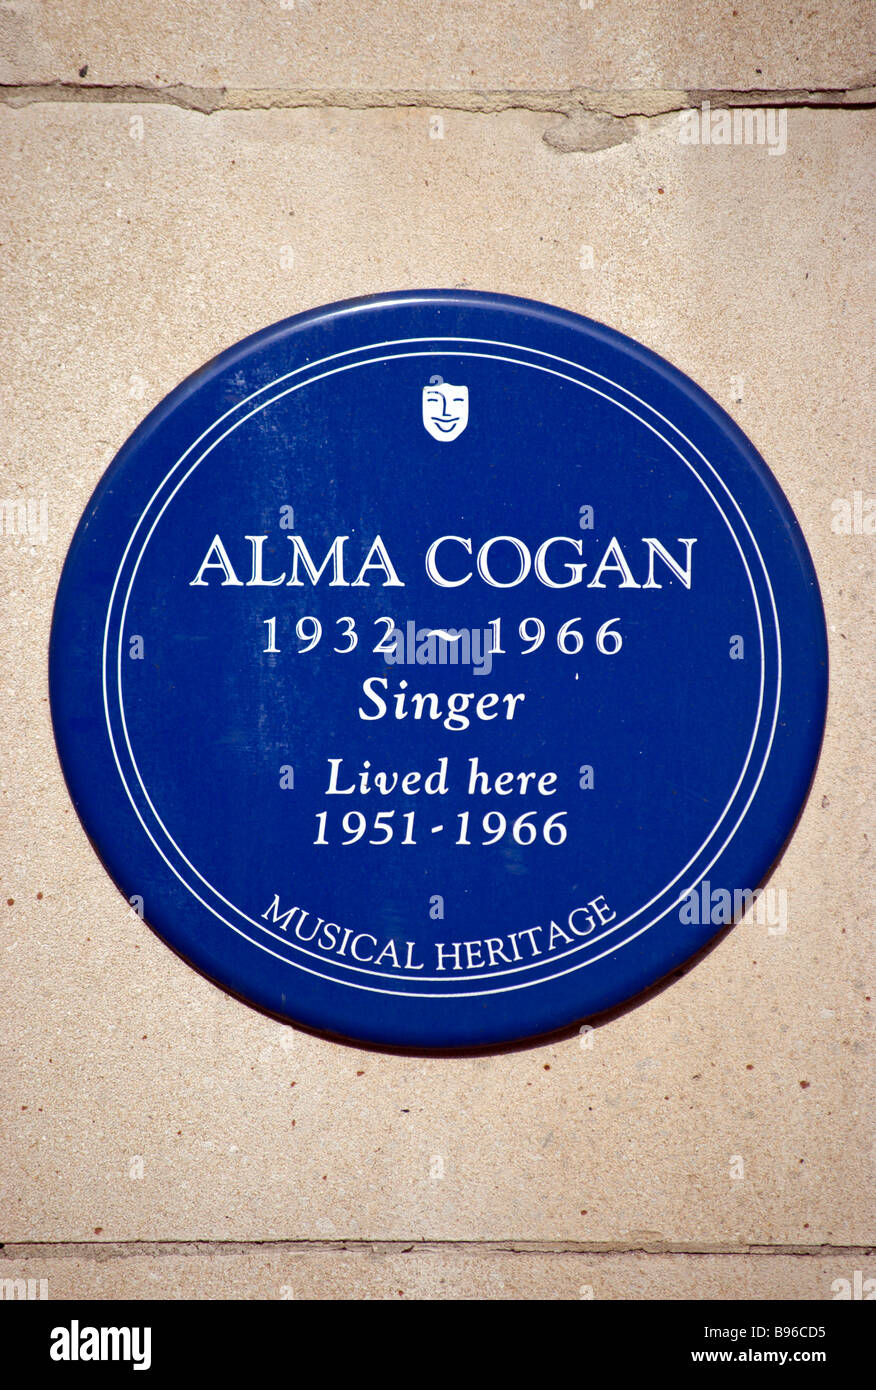 Blue plaque marquant une ancienne maison du chanteur alma cogan, dans Kensington High Street, à l'ouest de Londres, Angleterre Banque D'Images